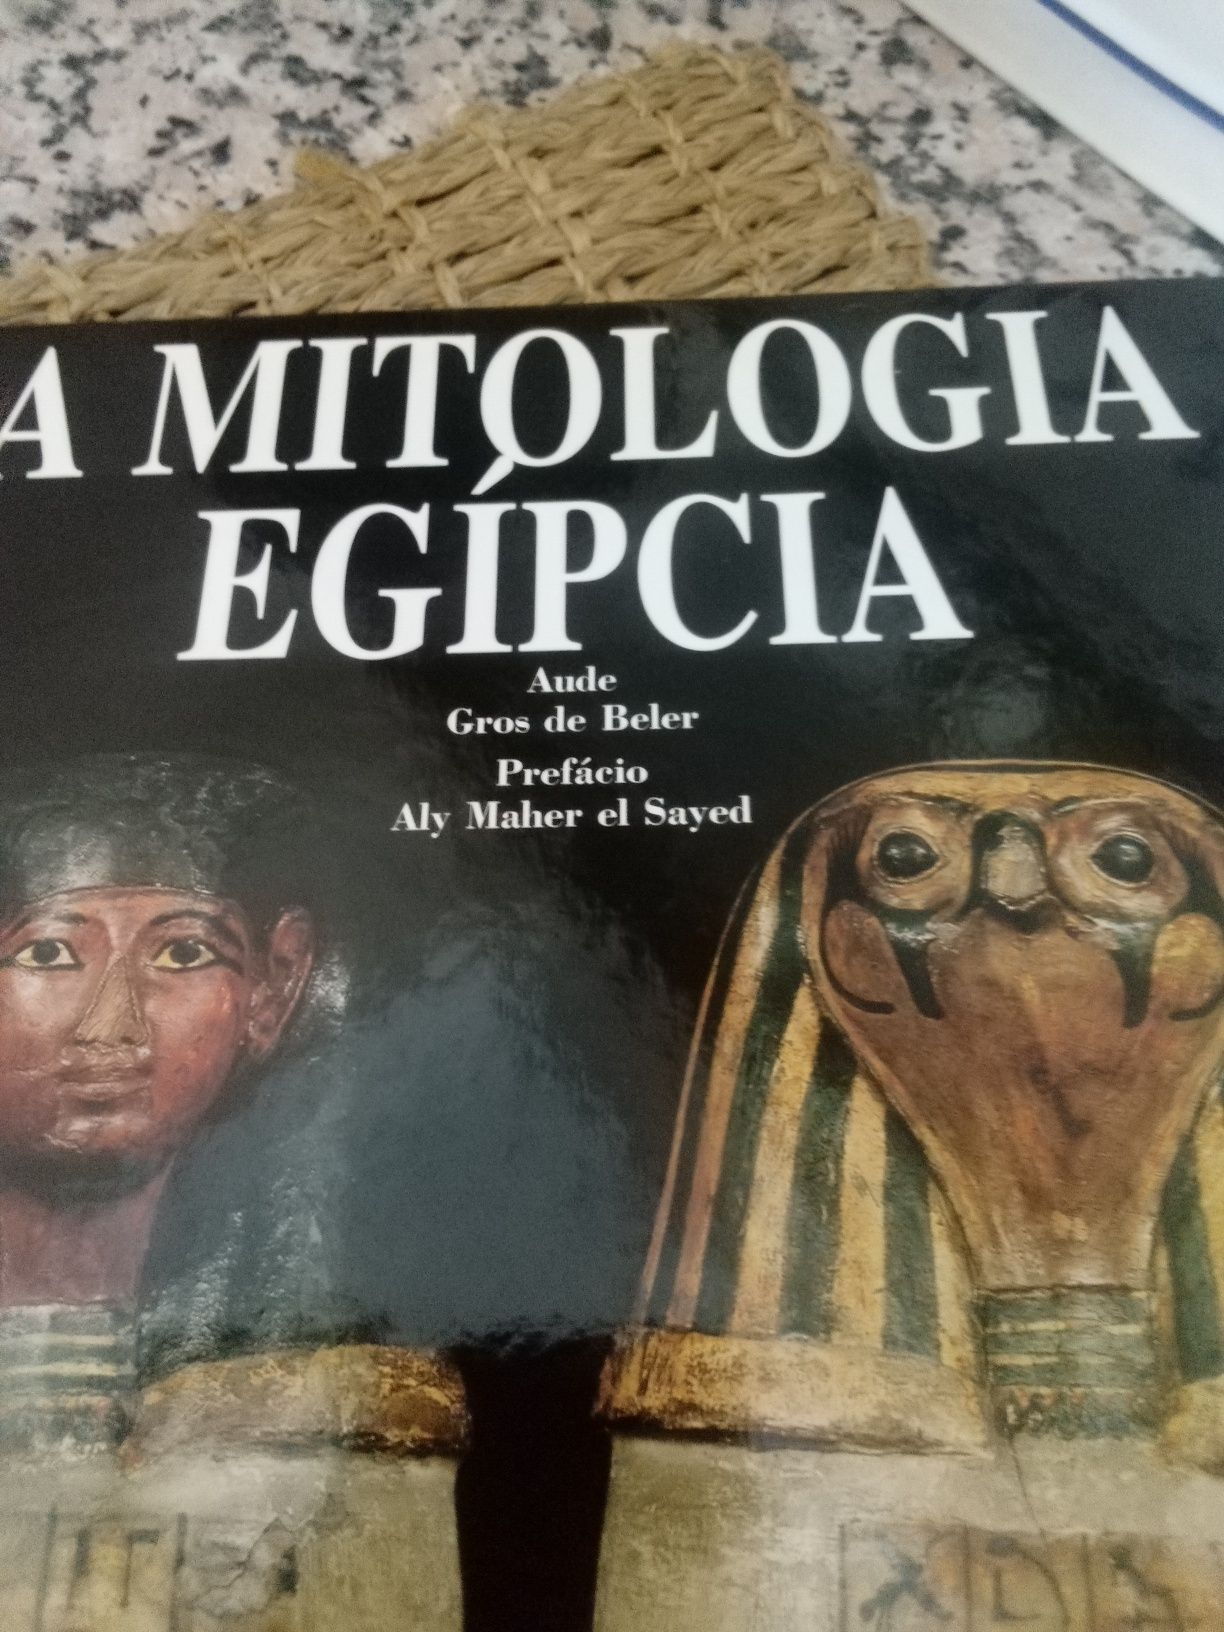 Mitologia egípcia